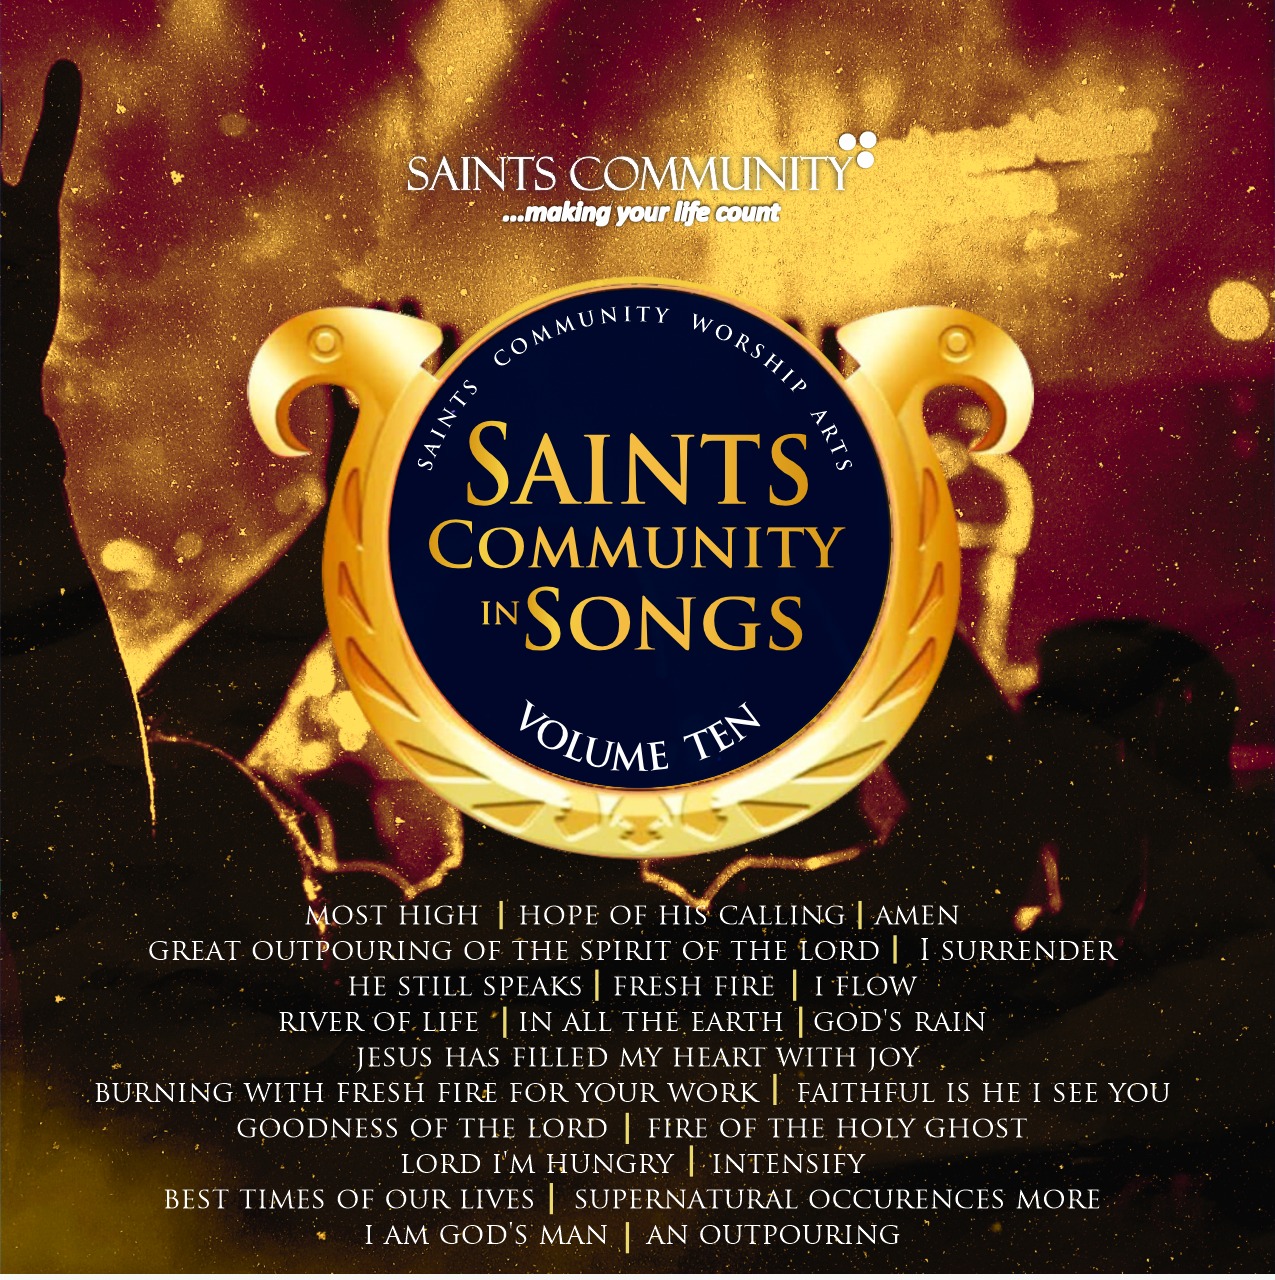 Saints Community in Songs - Vol 10